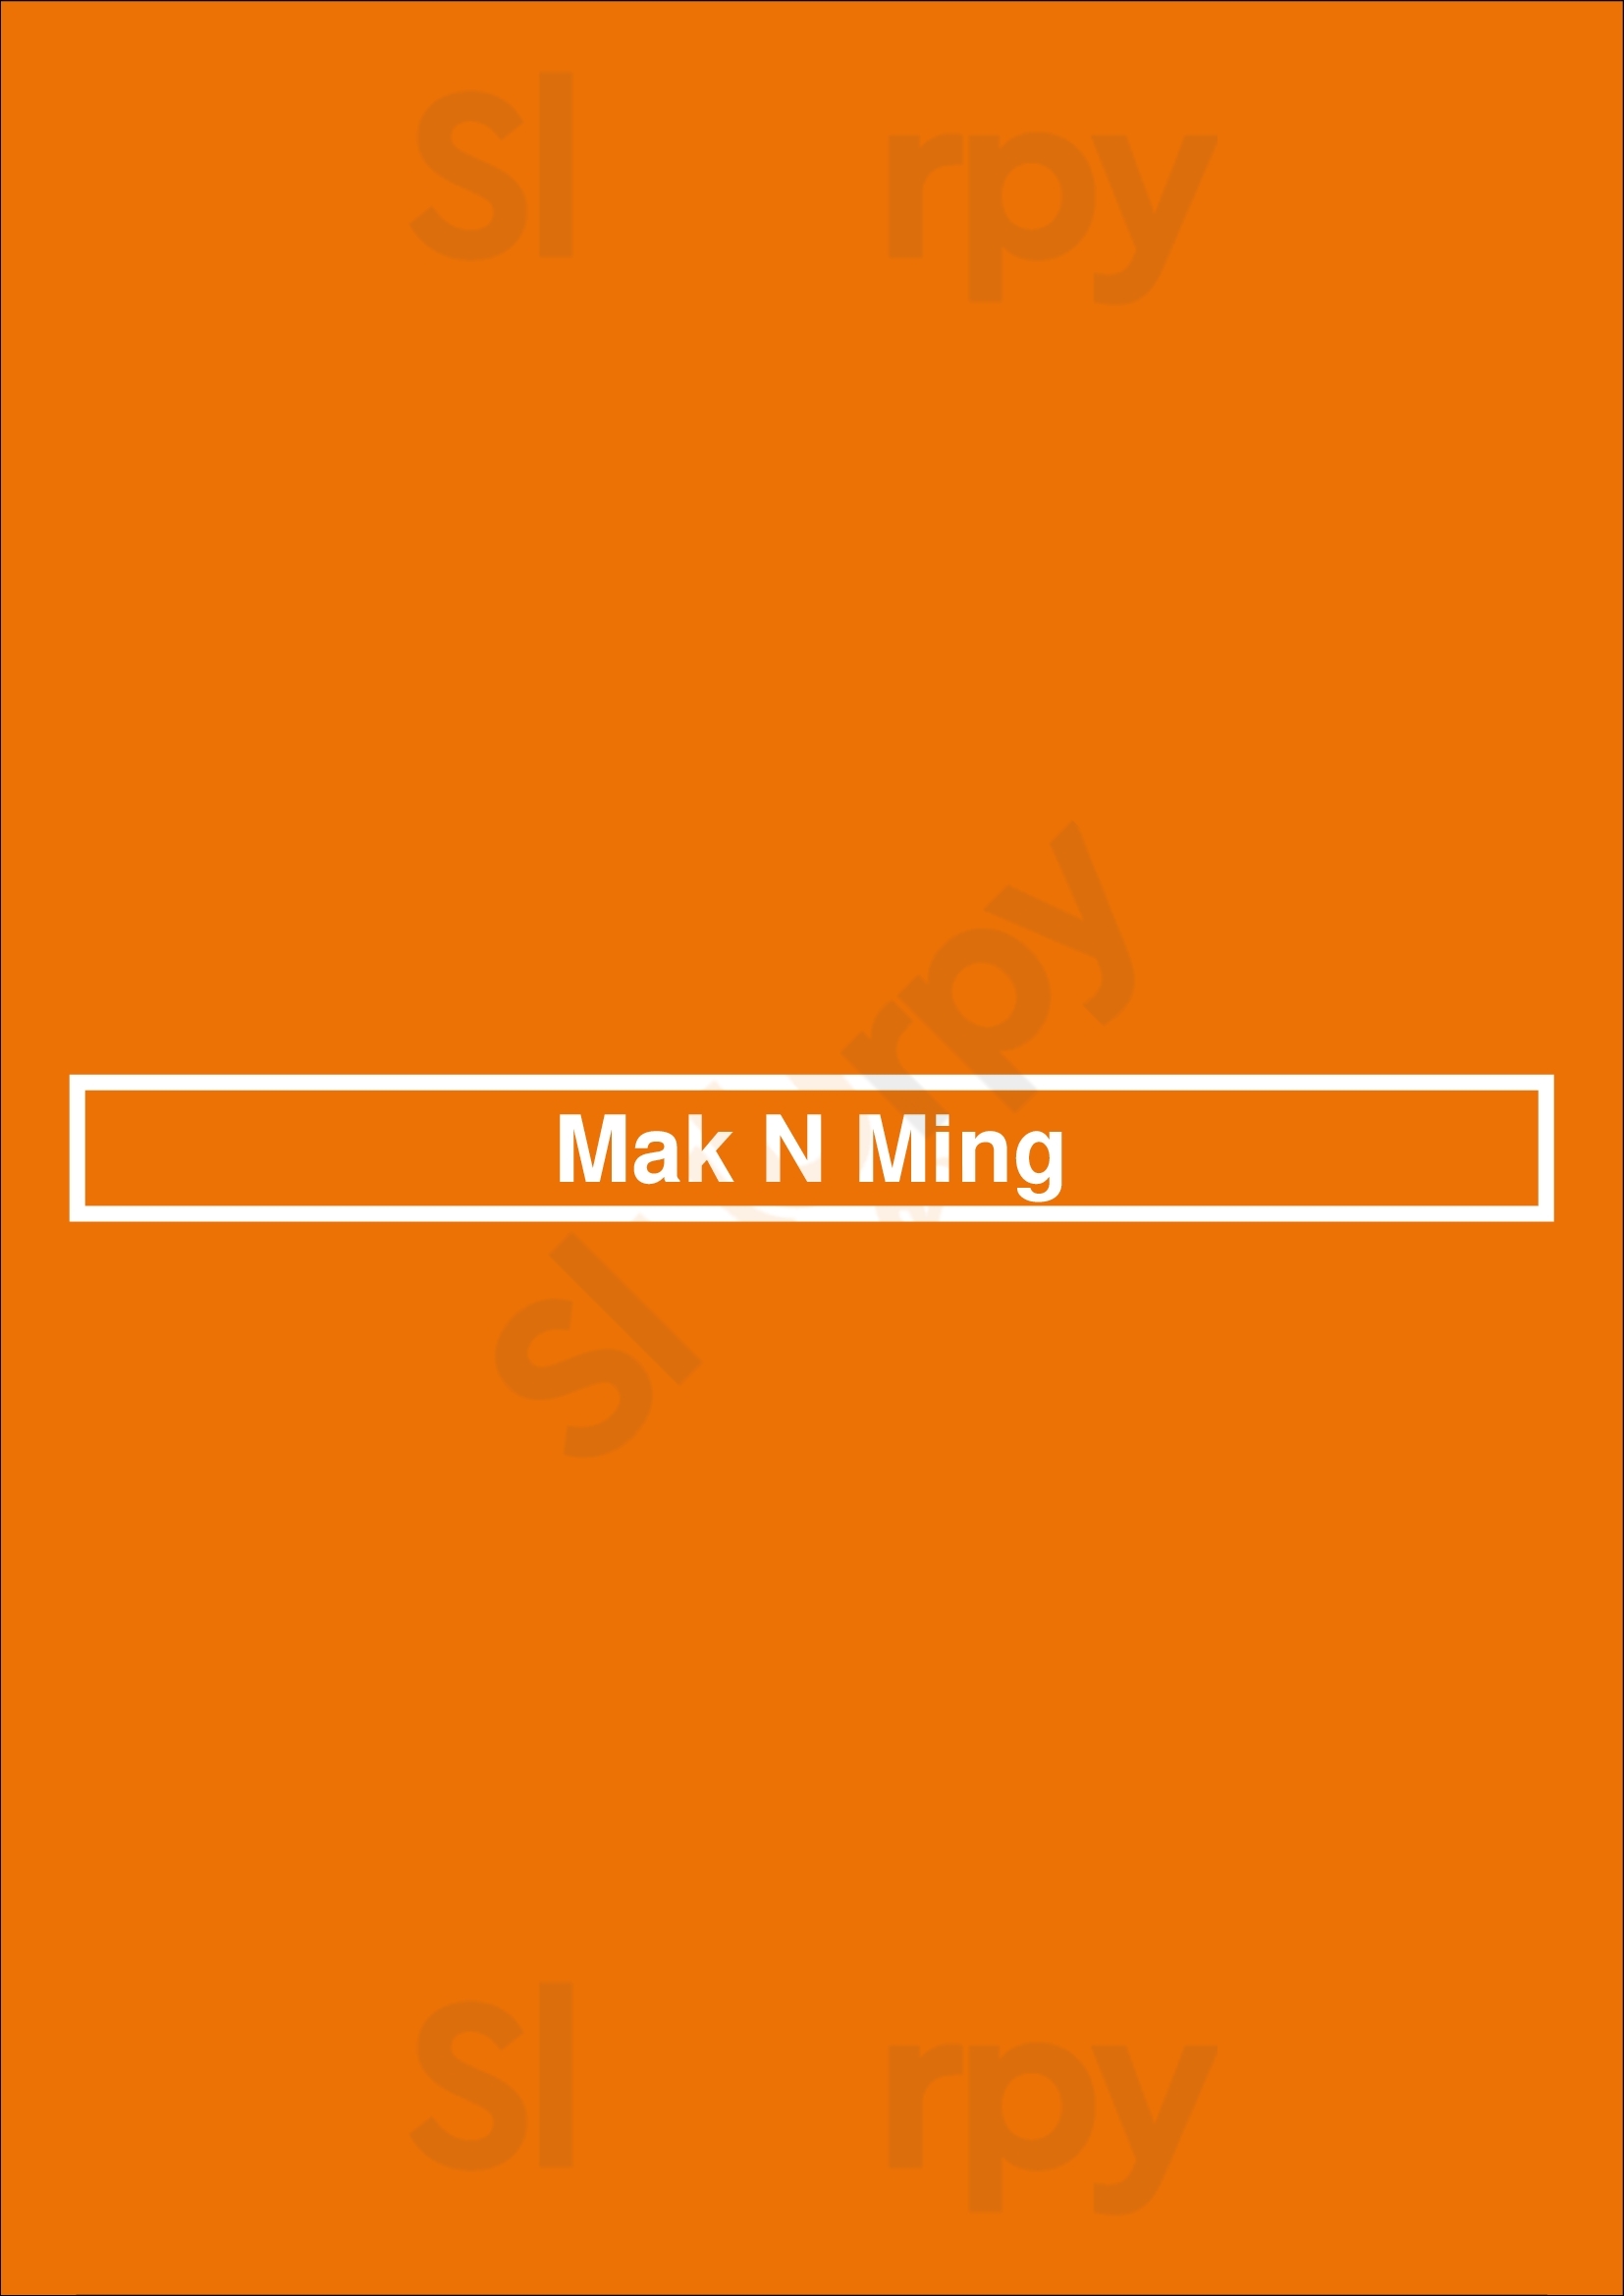 Mak N Ming Vancouver Menu - 1